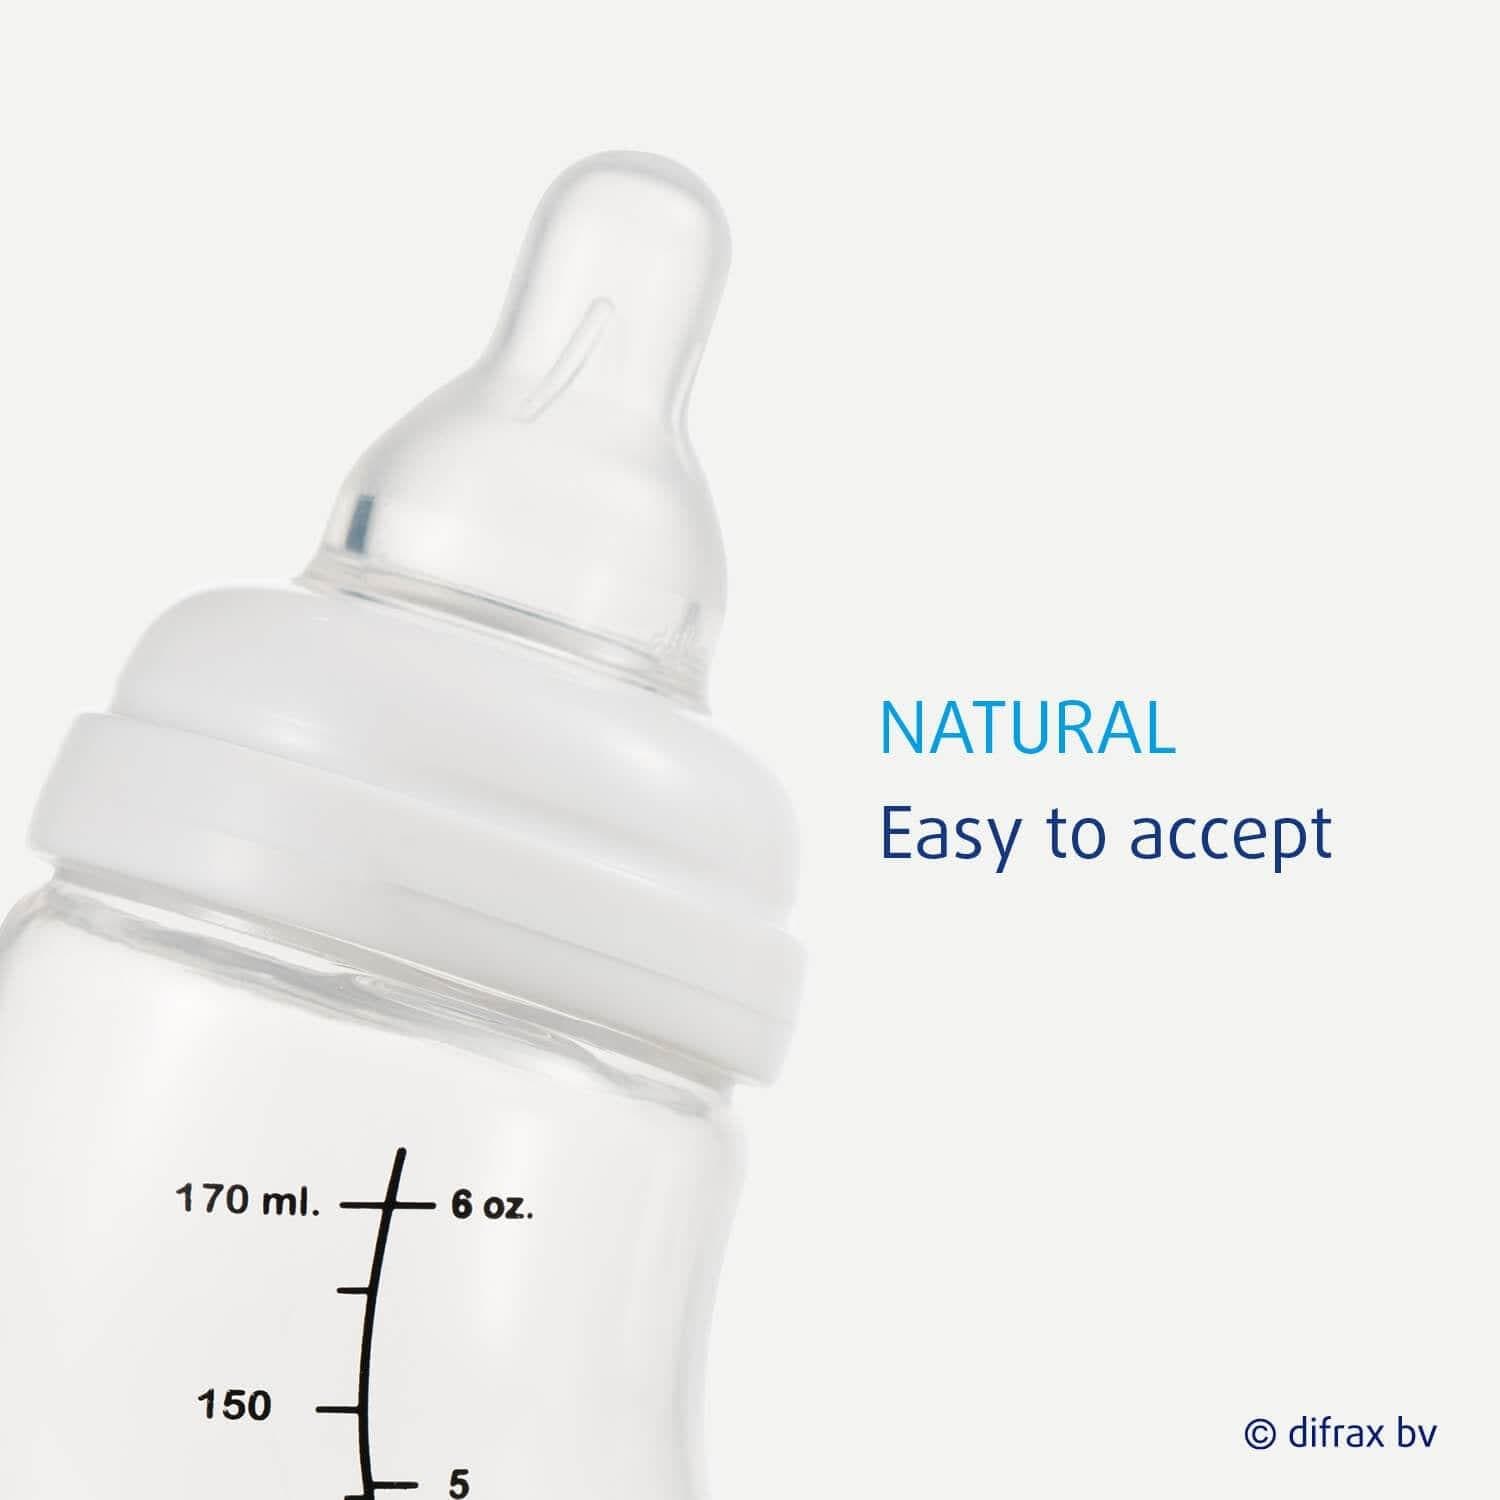 S-babyfles Natural 170 ml - Difrax